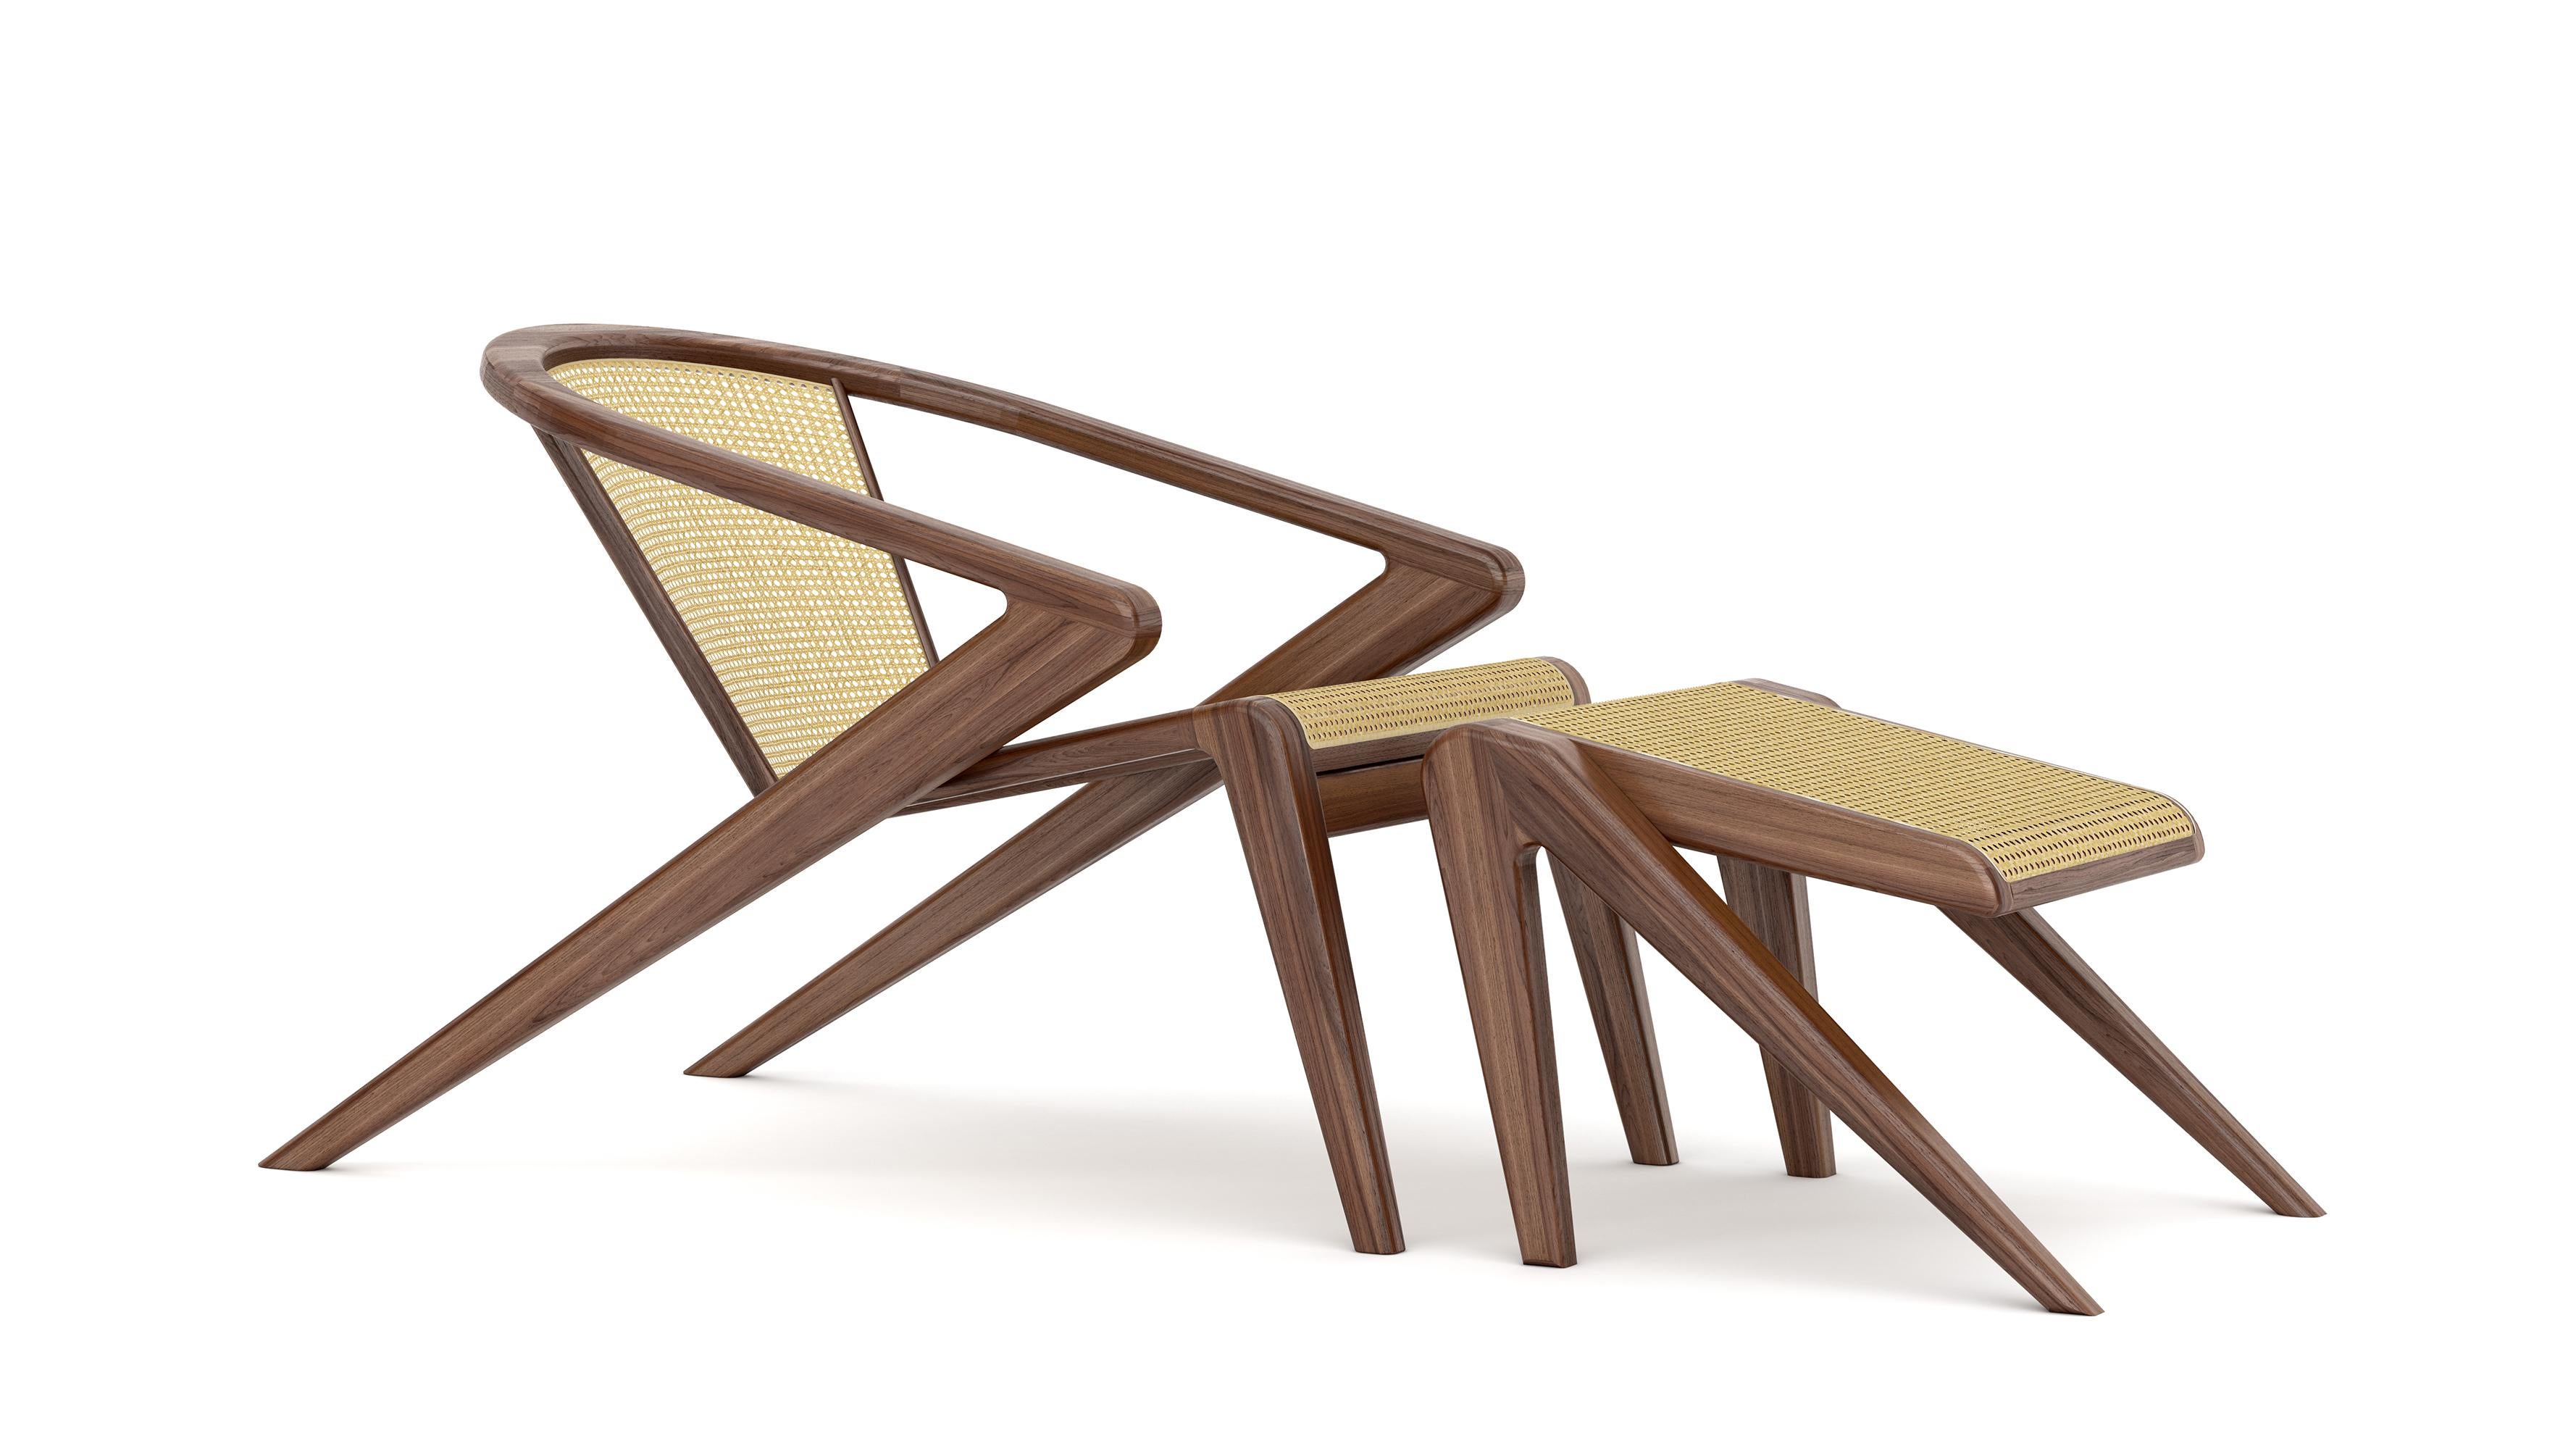 Der von Alexandre Caldas entworfene Portuguese Roots (PR) Lounge Chair ist der pure Ausdruck eines 25-jährigen Reifeprozesses, der in einer perfekten Symbiose zwischen Kunst und Handwerk endet. Der Stuhl wurde entworfen, um eine Geschichte